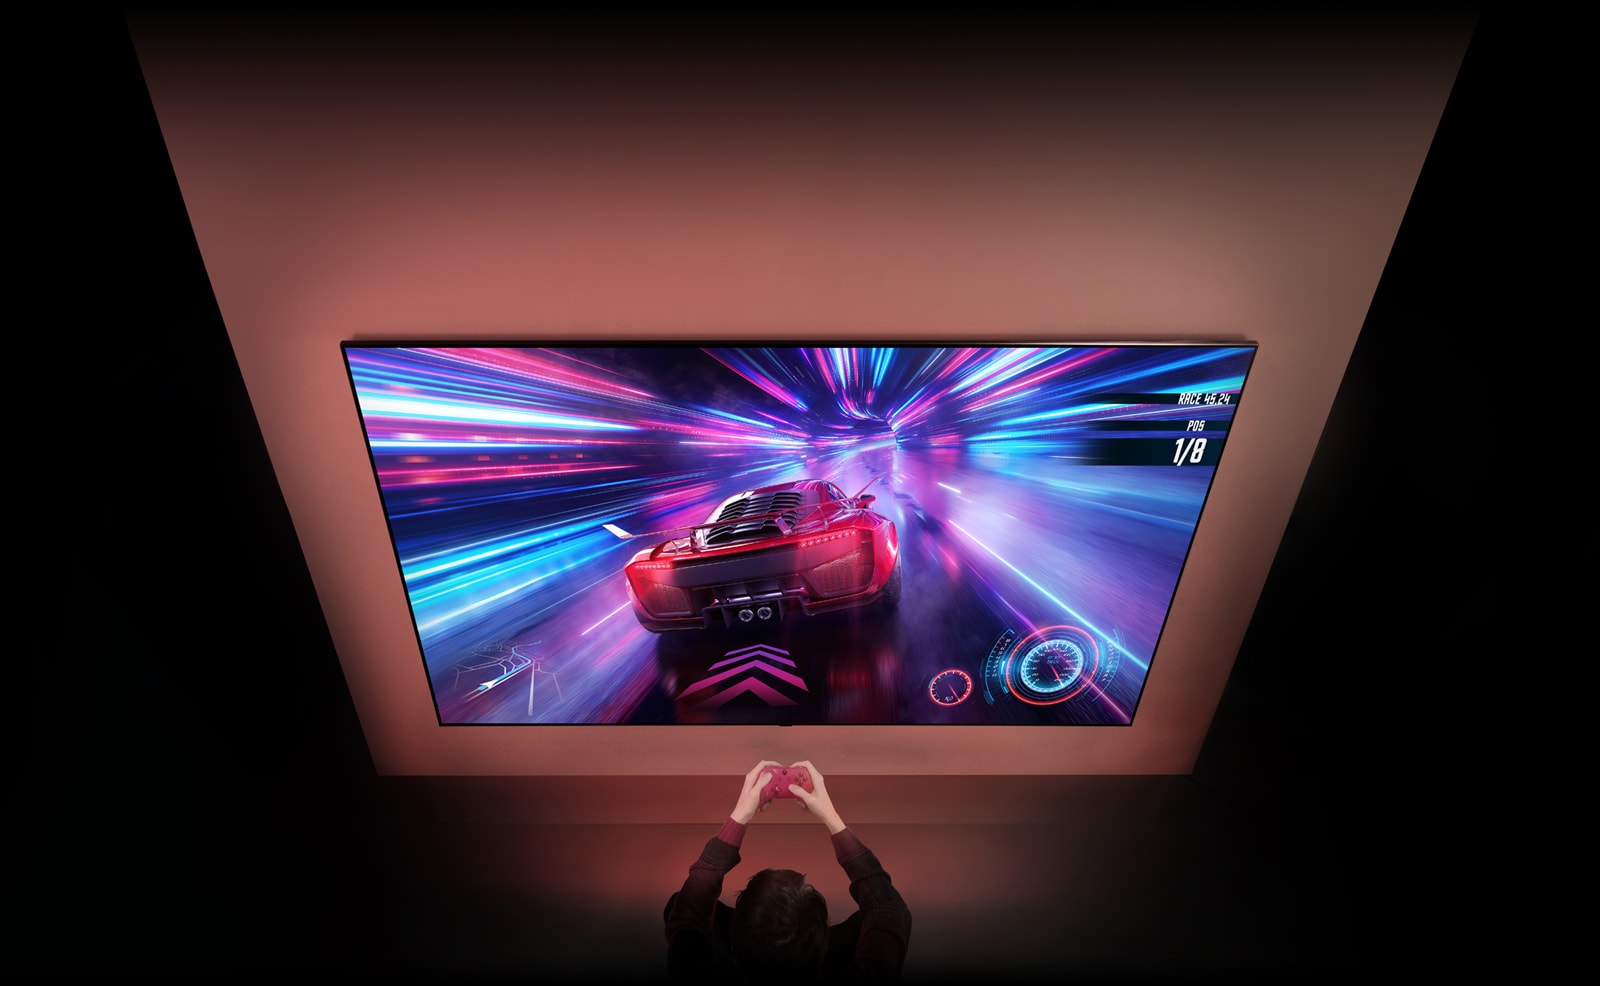 En stor TV er på veggen og skjermen viser et bilspill som pågår. Foran TV-en ses en spillkontroller i hendene på en person som er fokusert på spillet.